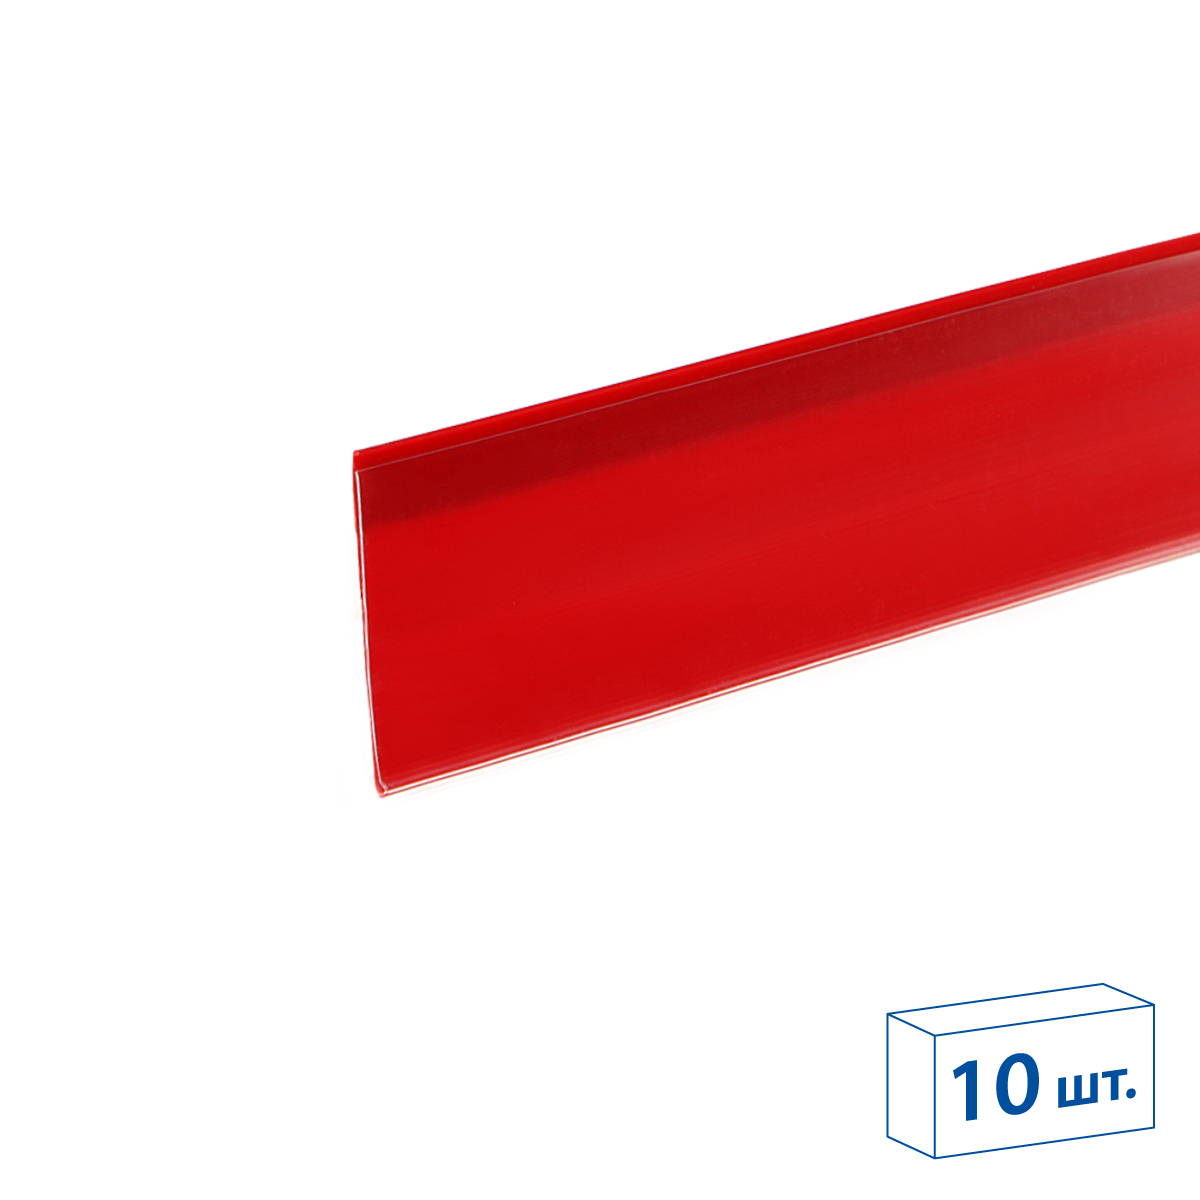 Ценникодержатель полочный самоклеящийся DBR39 SL длина 1000 мм., цвет красный (10 шт в упаковке)